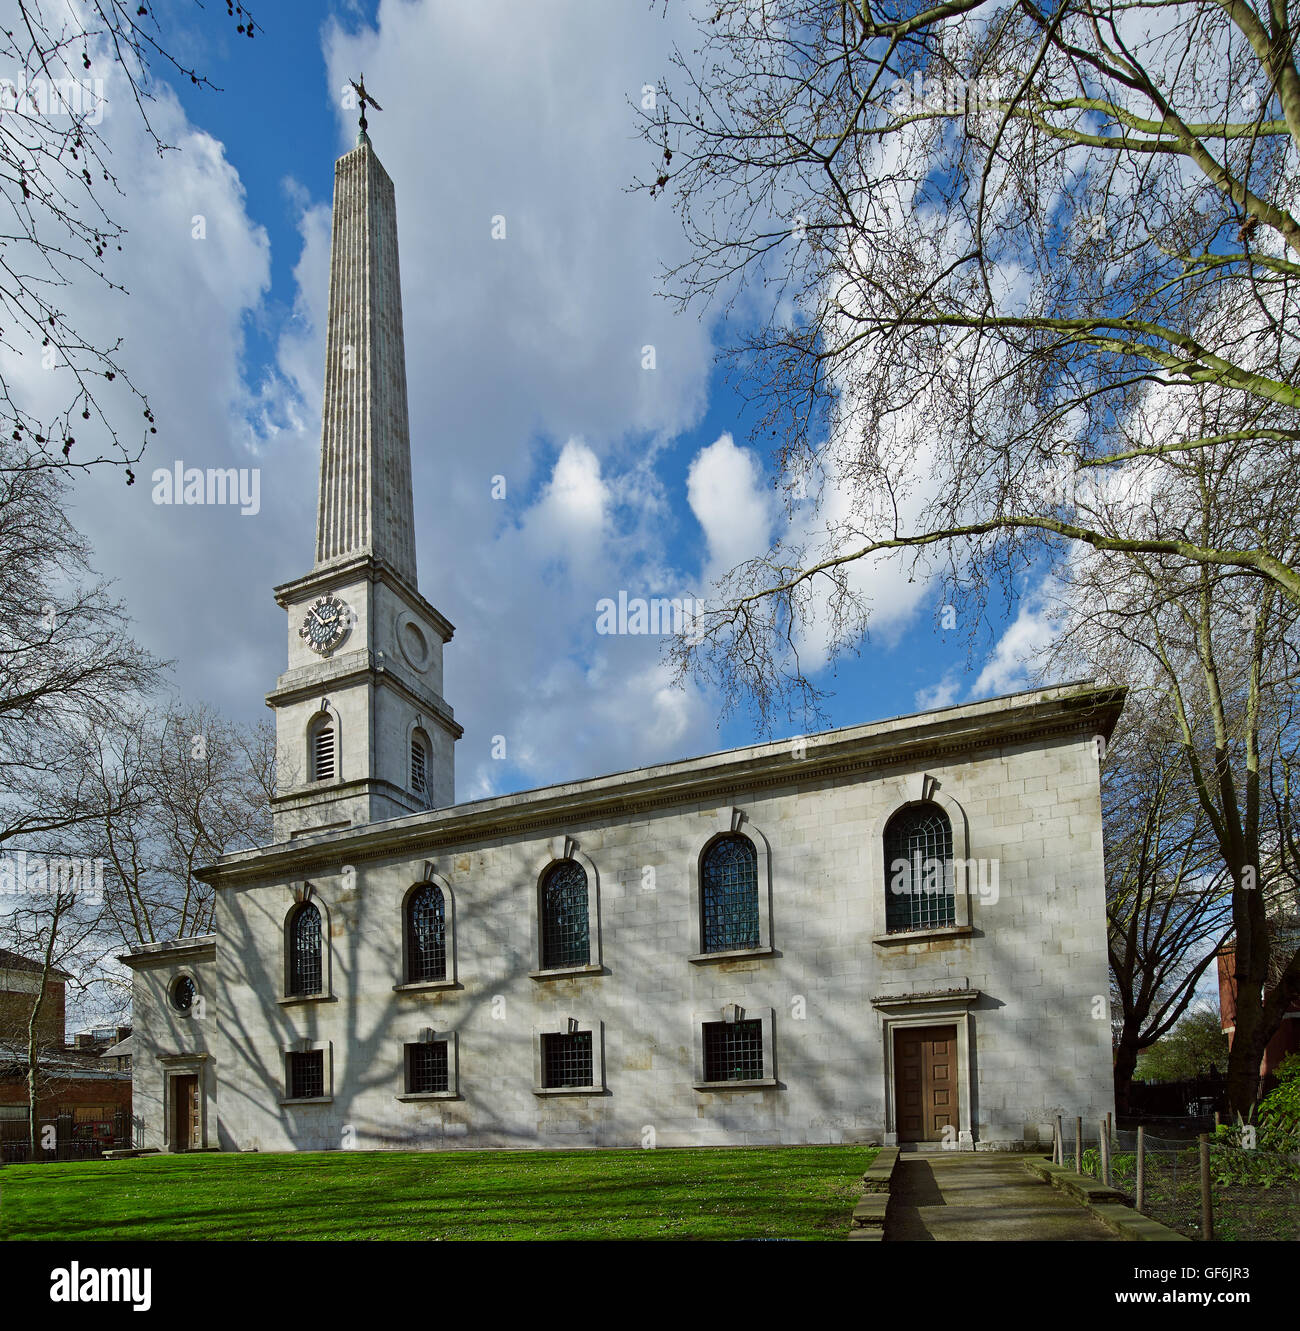 St Luke Old Street, South Front und Obelisk Kirchturm. Wahrscheinlich die Fugenausbildung von John James und Nicholas Hawksmoor, 1727-1733. Stockfoto